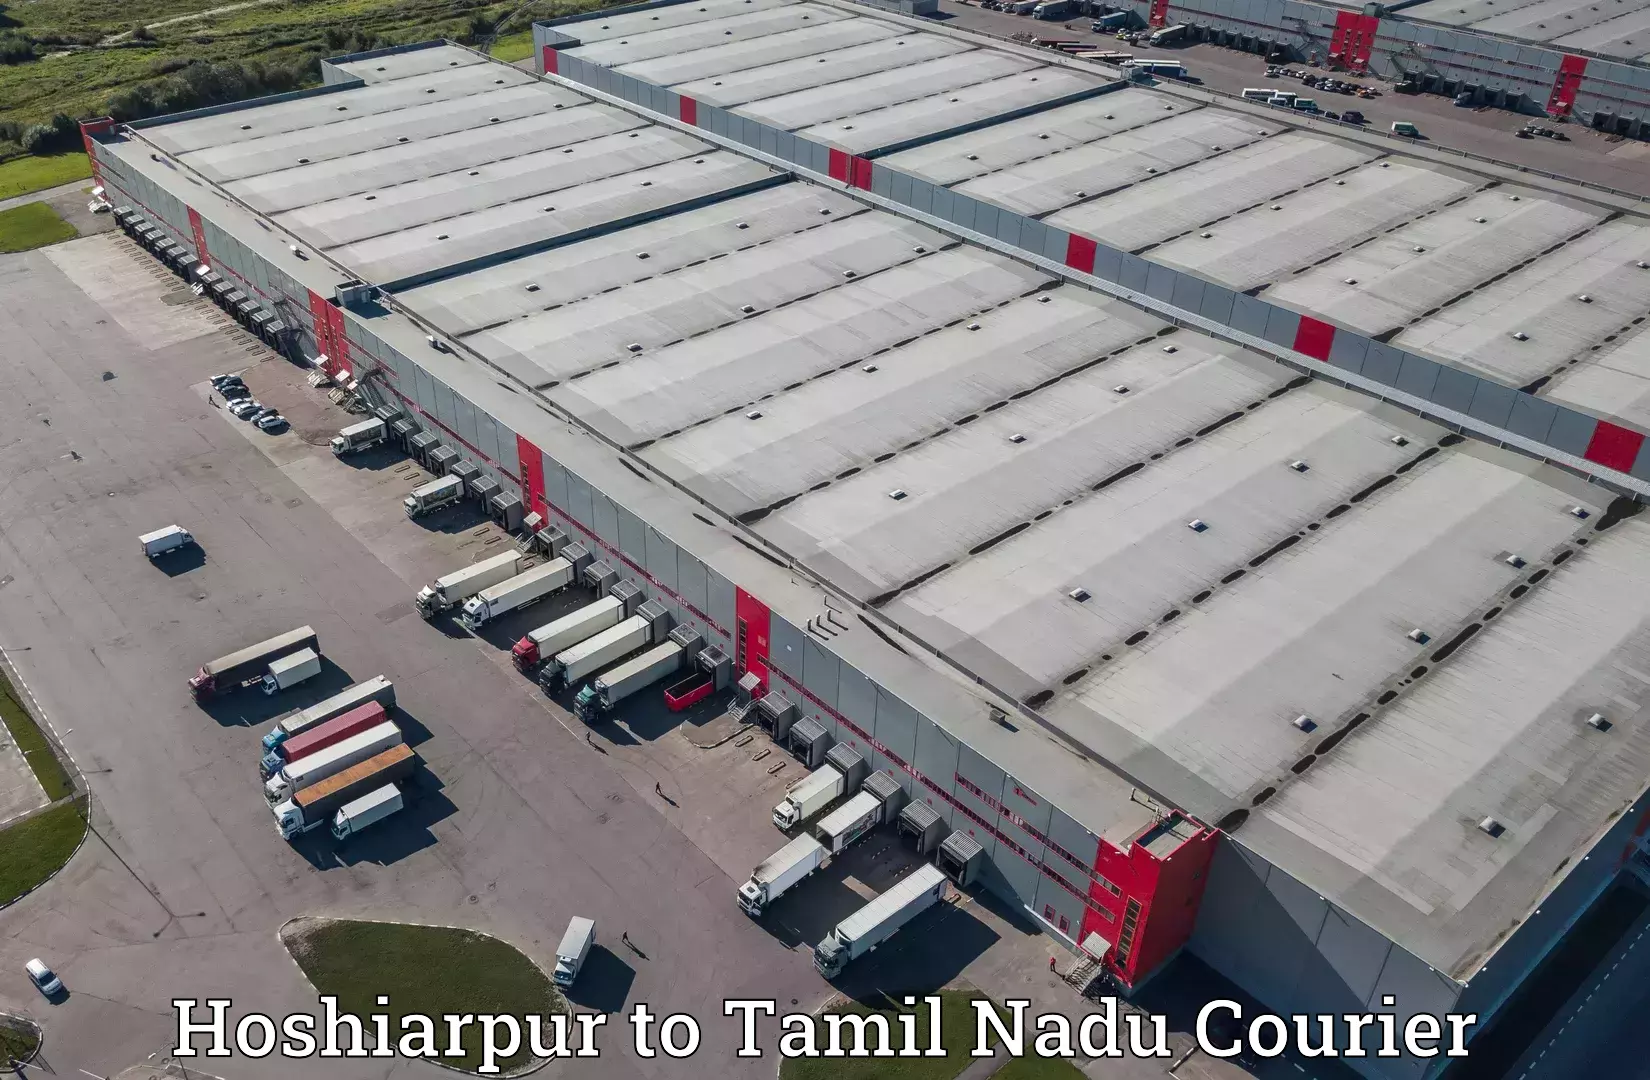 Reliable parcel services Hoshiarpur to Tamil Nadu